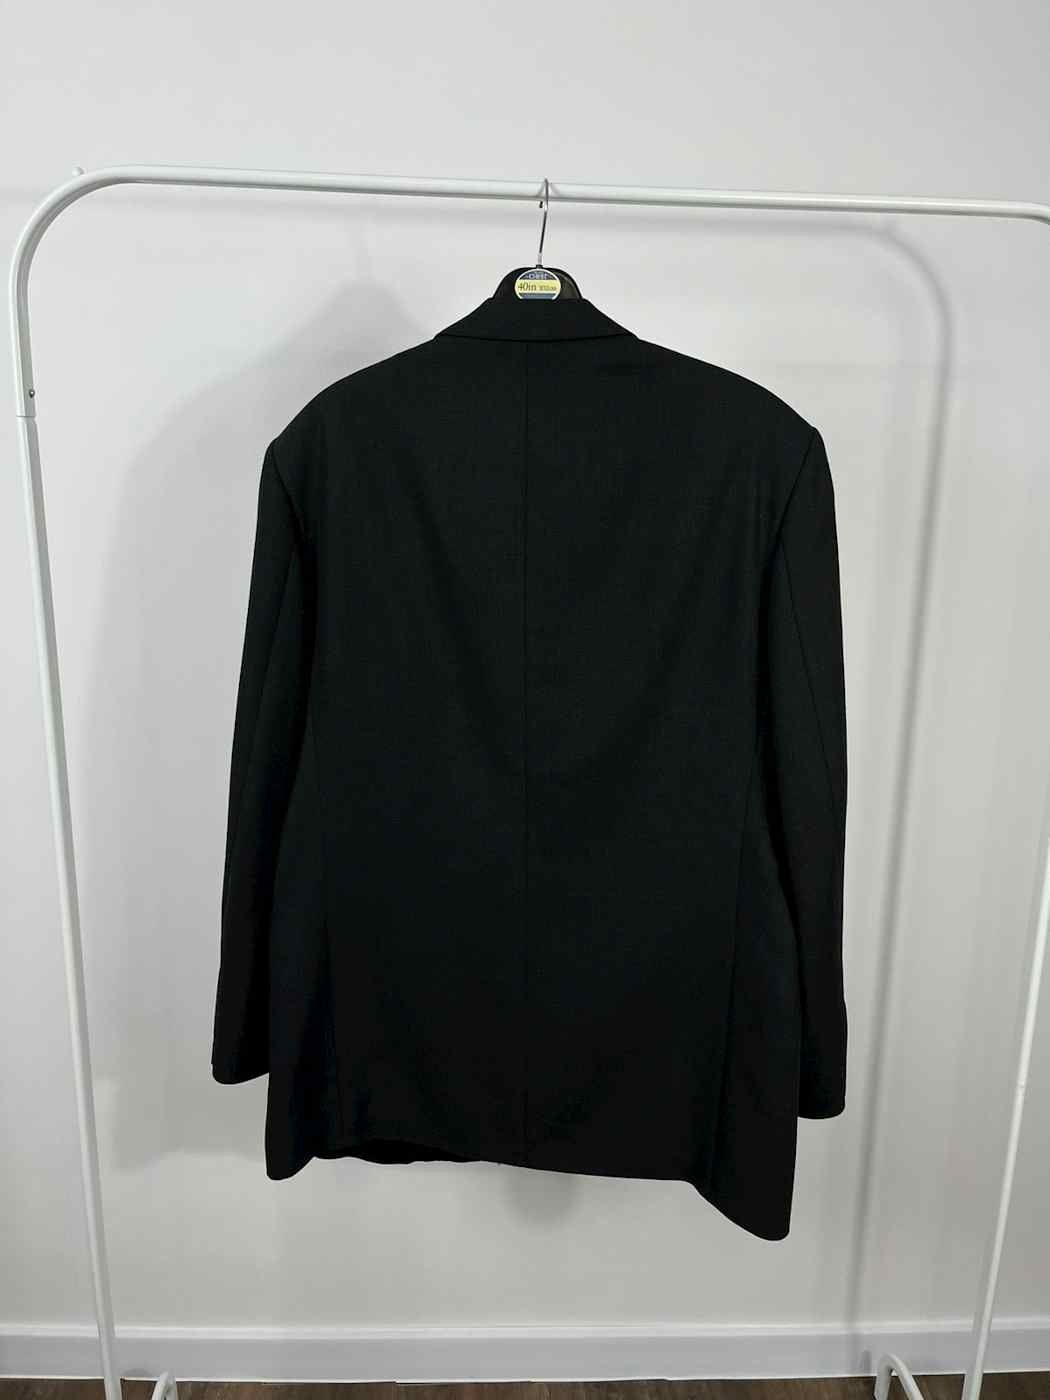 Костюм Balmain Paris классический черный пиджак Exchange деловой